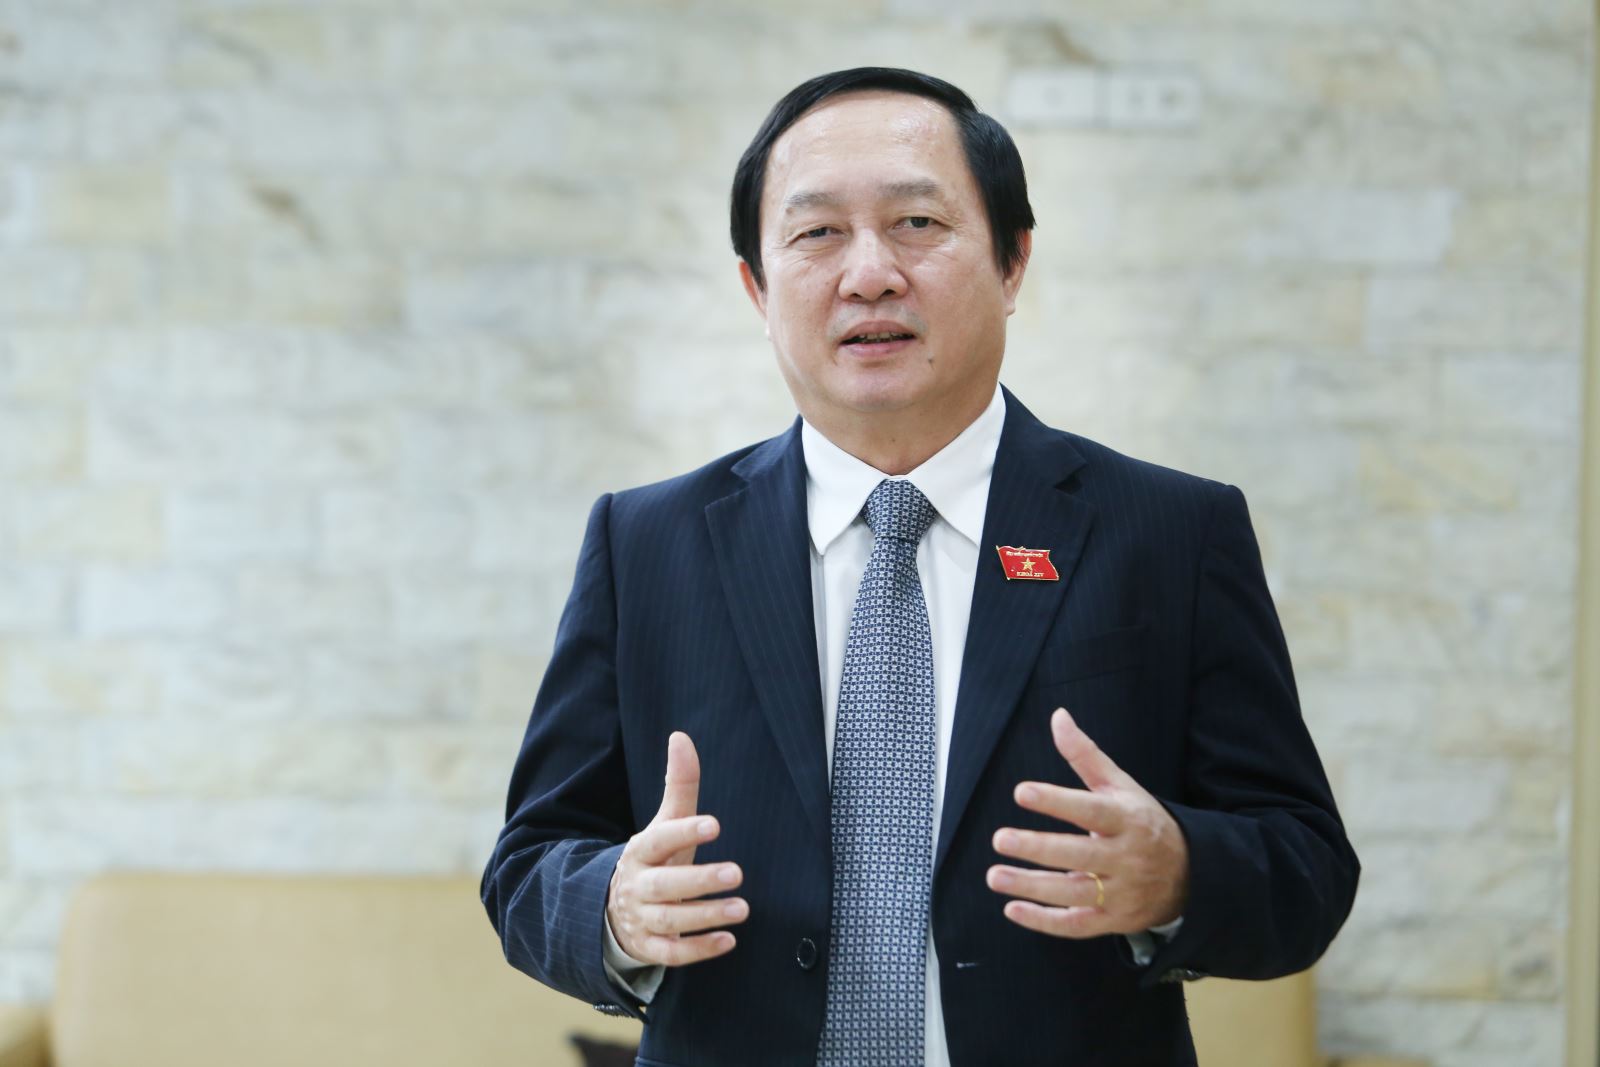 Đồng chí Huỳnh Thành Đạt được Quốc hội phê chuẩn bổ nhiệm giữ chức Bộ trưởng Bộ Khoa học và Công nghệ